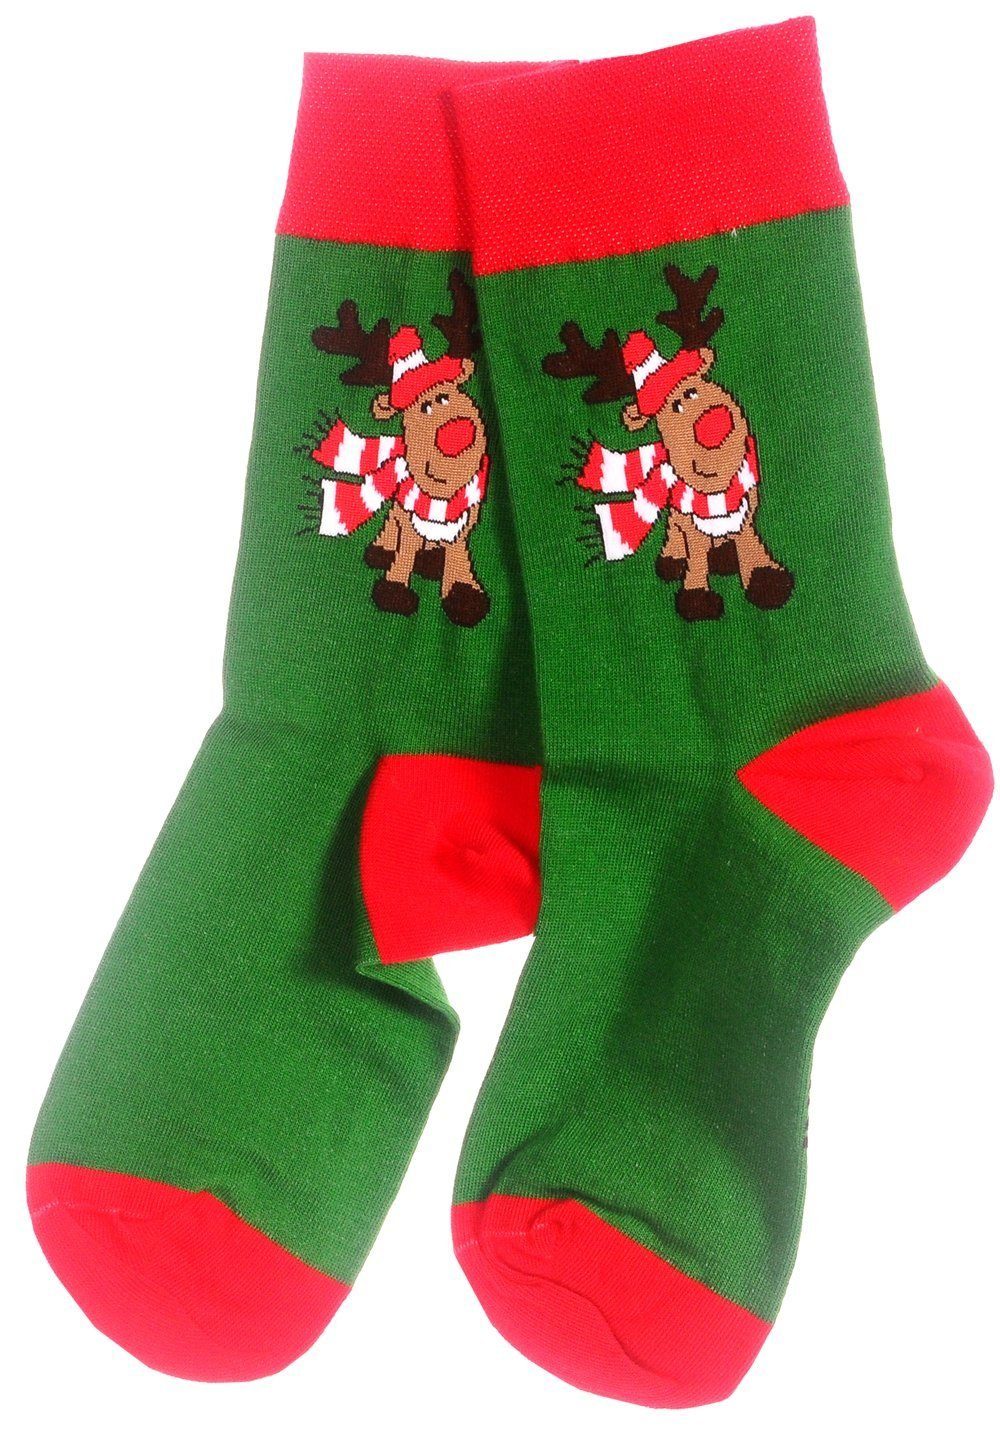 Martinex Socken 1 42 39 bunt, 43 Grün_Rentier Paar Weihnachtssocken 38 35 Strümpfe weihnachtlich schön, Socken 46